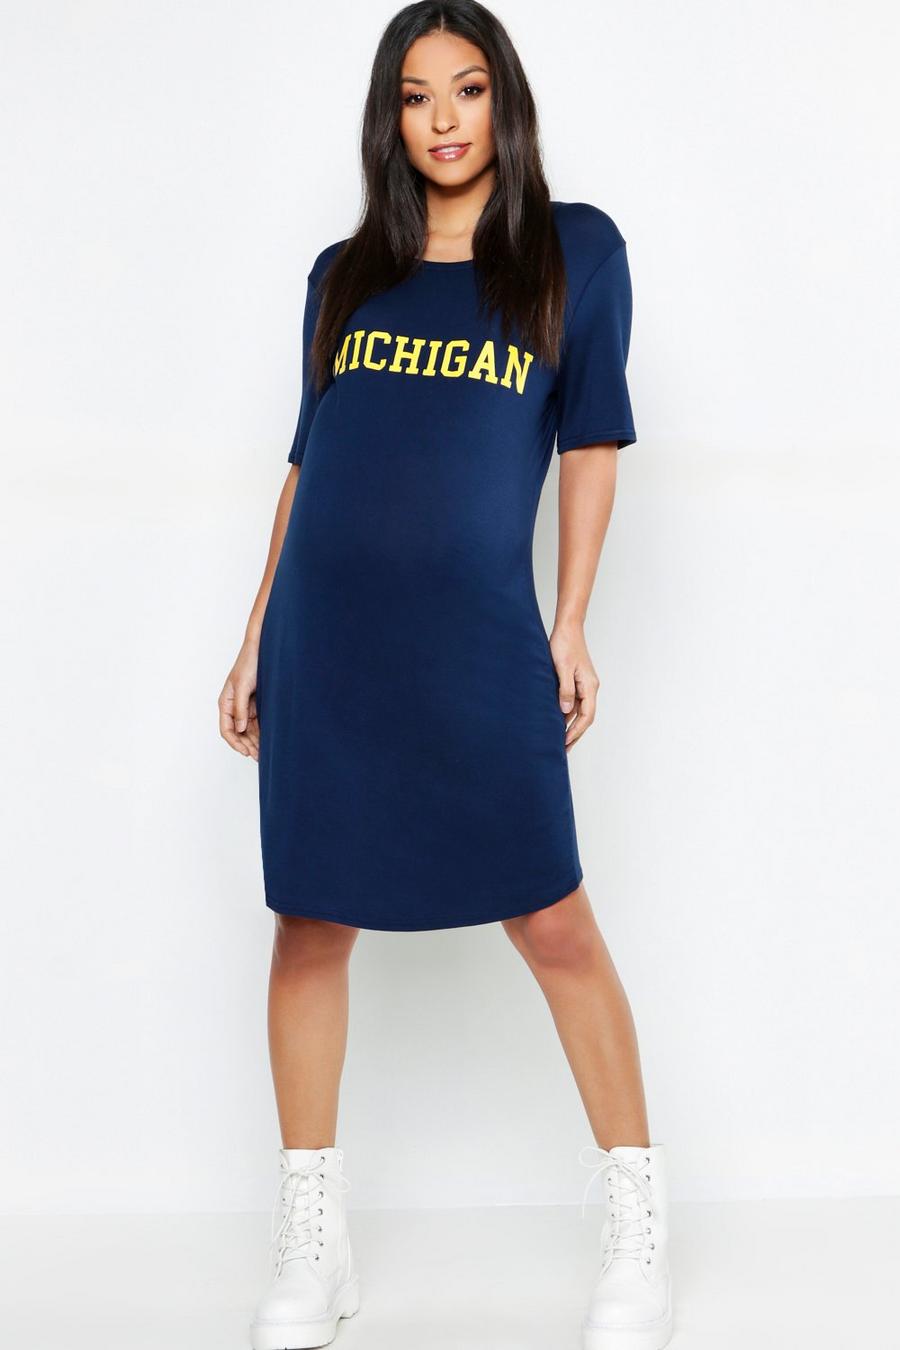 Vestido estilo camiseta “Michigan” Premamá image number 1